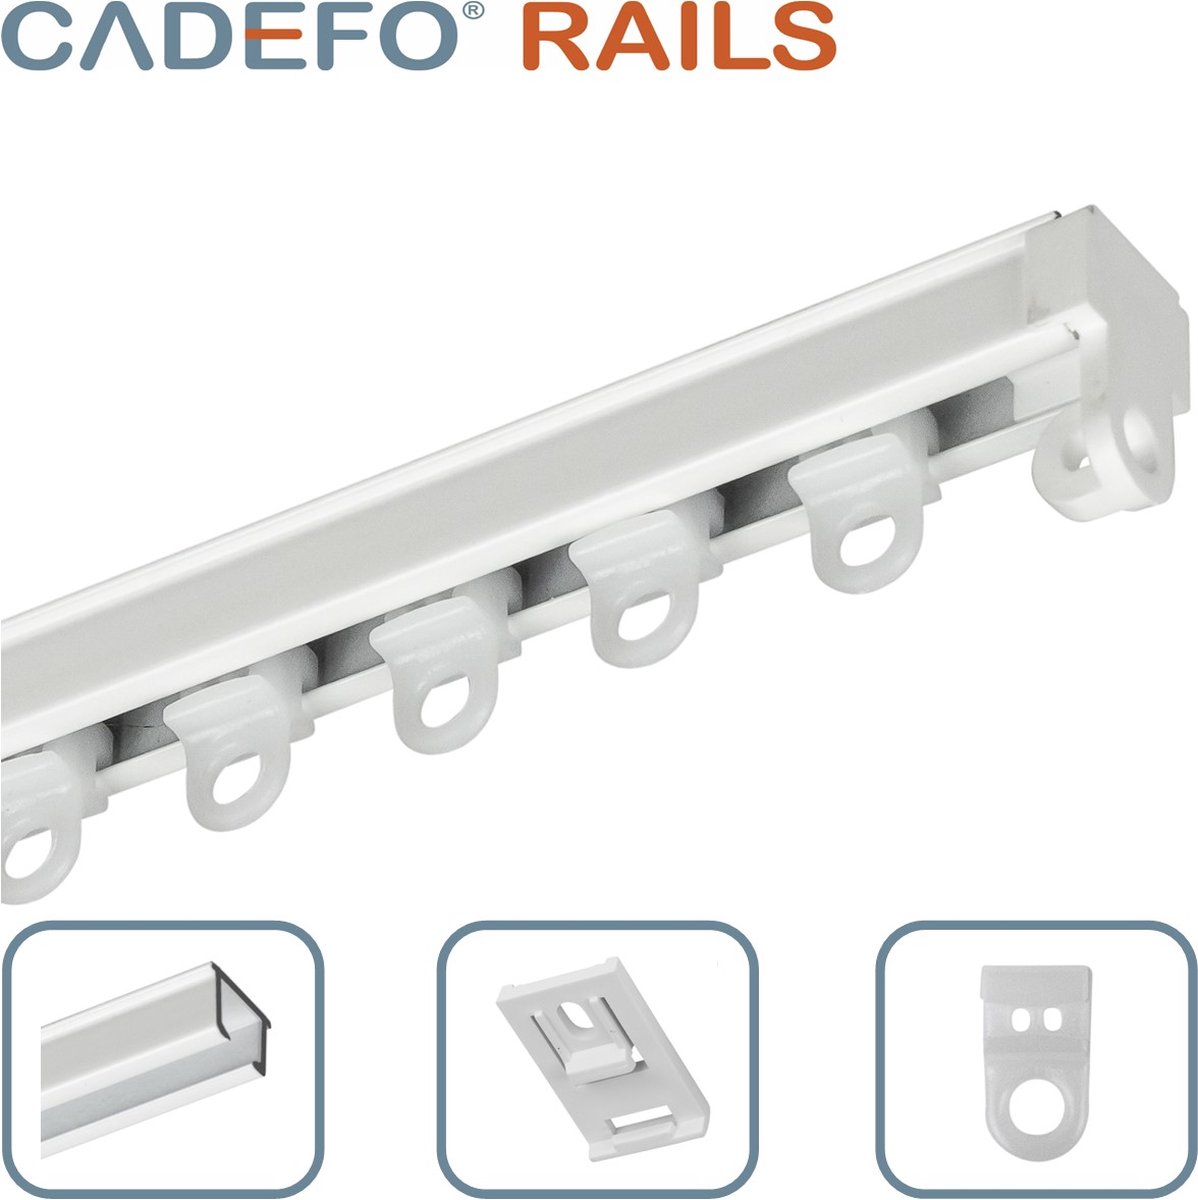 CADEFO RAILS (251 - 300 cm) Gordijnrails - Compleet op maat! - UIT 1 STUK - Leverbaar tot 6 meter - Plafondbevestiging - Lengte 278 cm